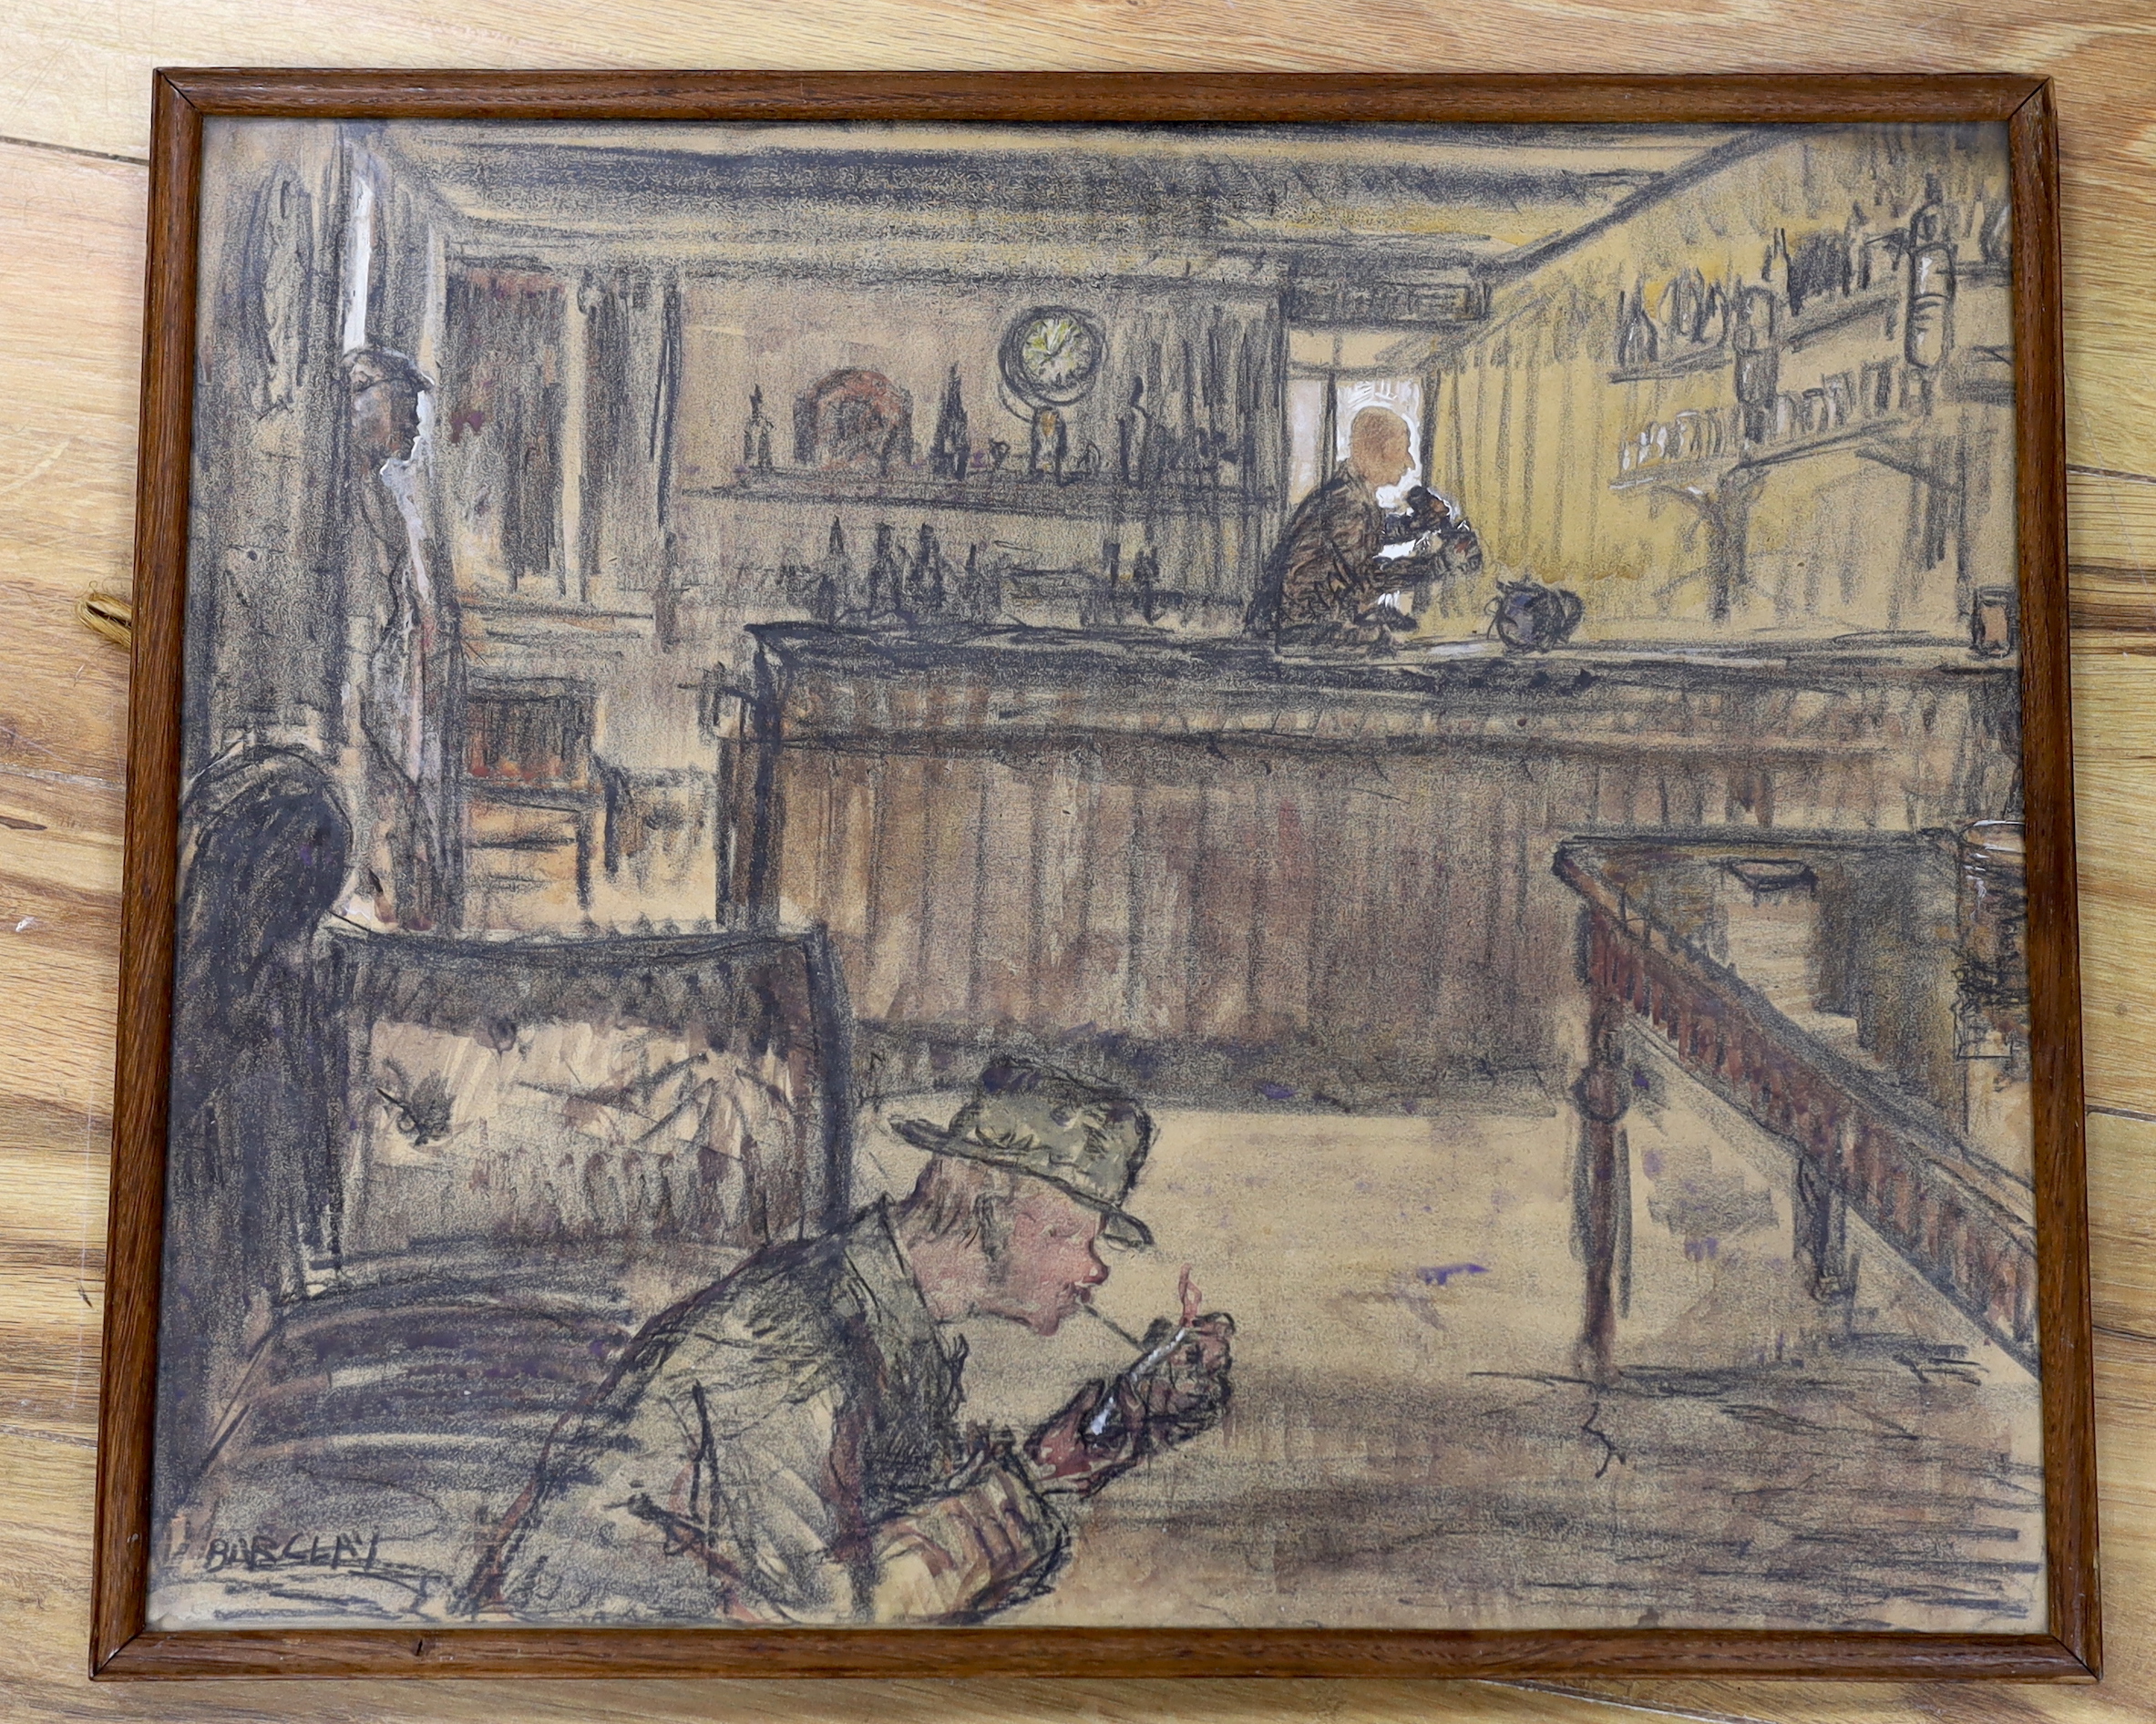 John Rankine Barclay (British, 1884-1962), pencil and watercolour, Pub interior, signed, 37 x 45cm